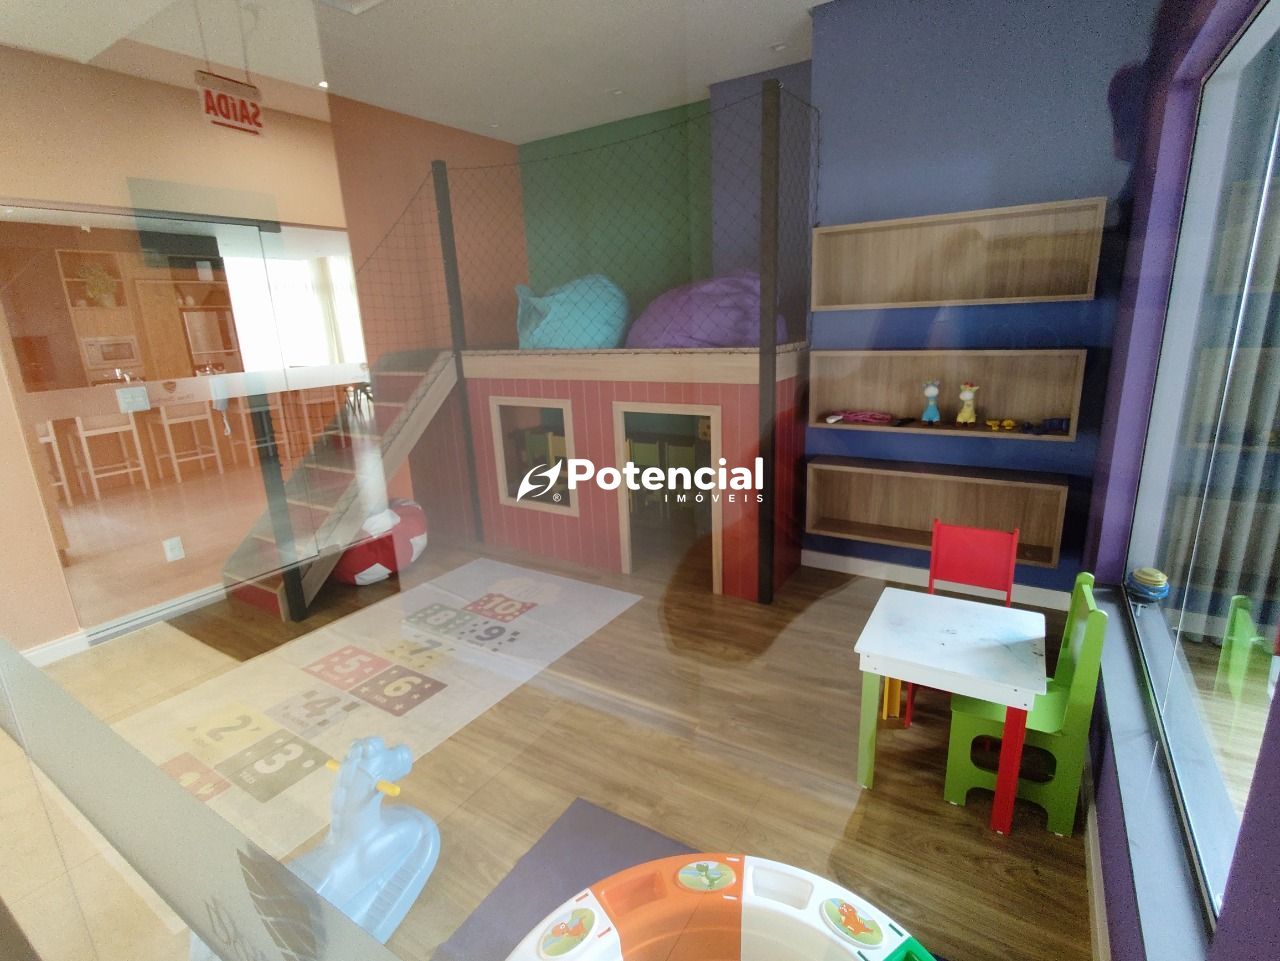 Imagem de Apartamento 2 Dormitórios sendo 1 Suíte | Morretes - Itapema/SC | Potencial Imóveis